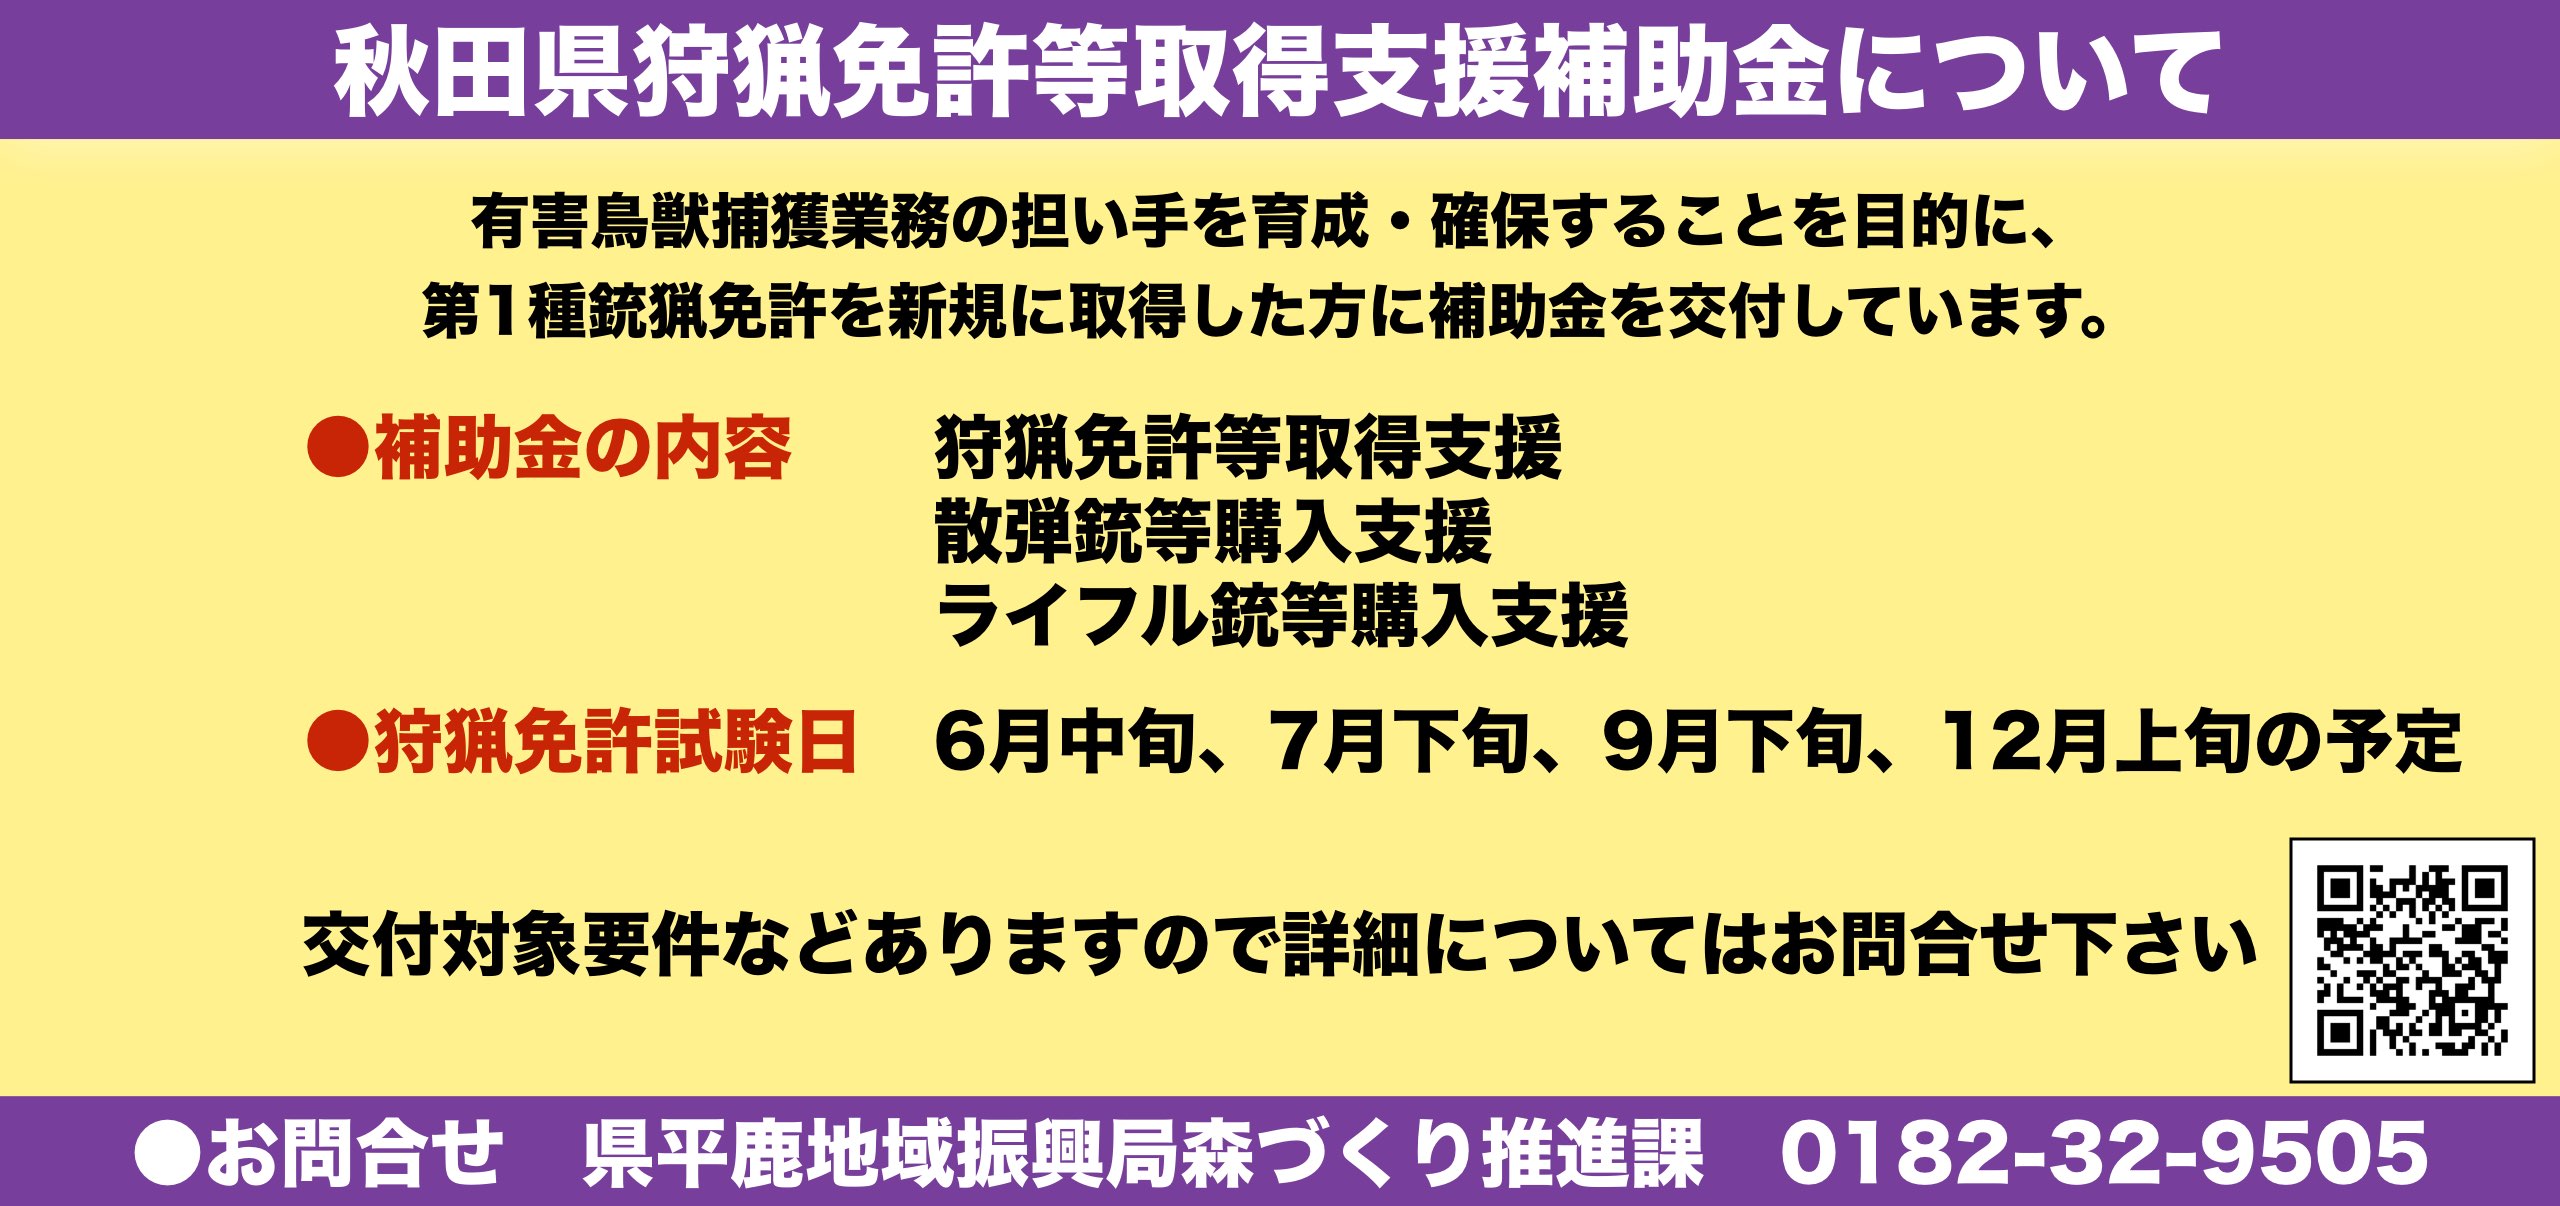 秋田県狩猟免許等取得支援補助金について